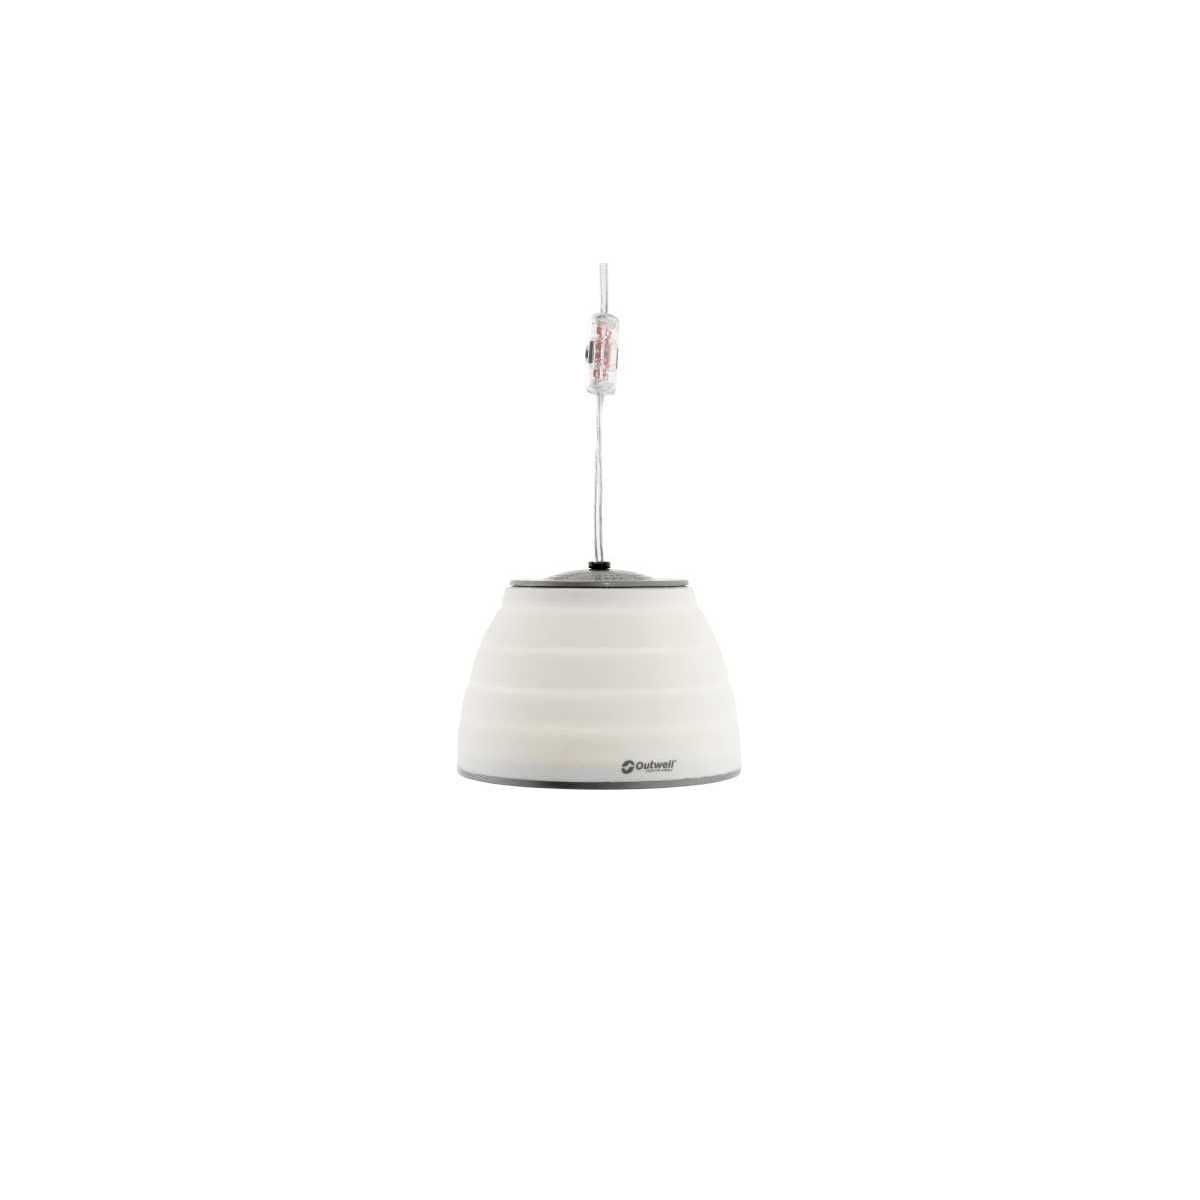 Outwell Leonis Lux LED-Haengeleuchte 230V Cream White - 651239